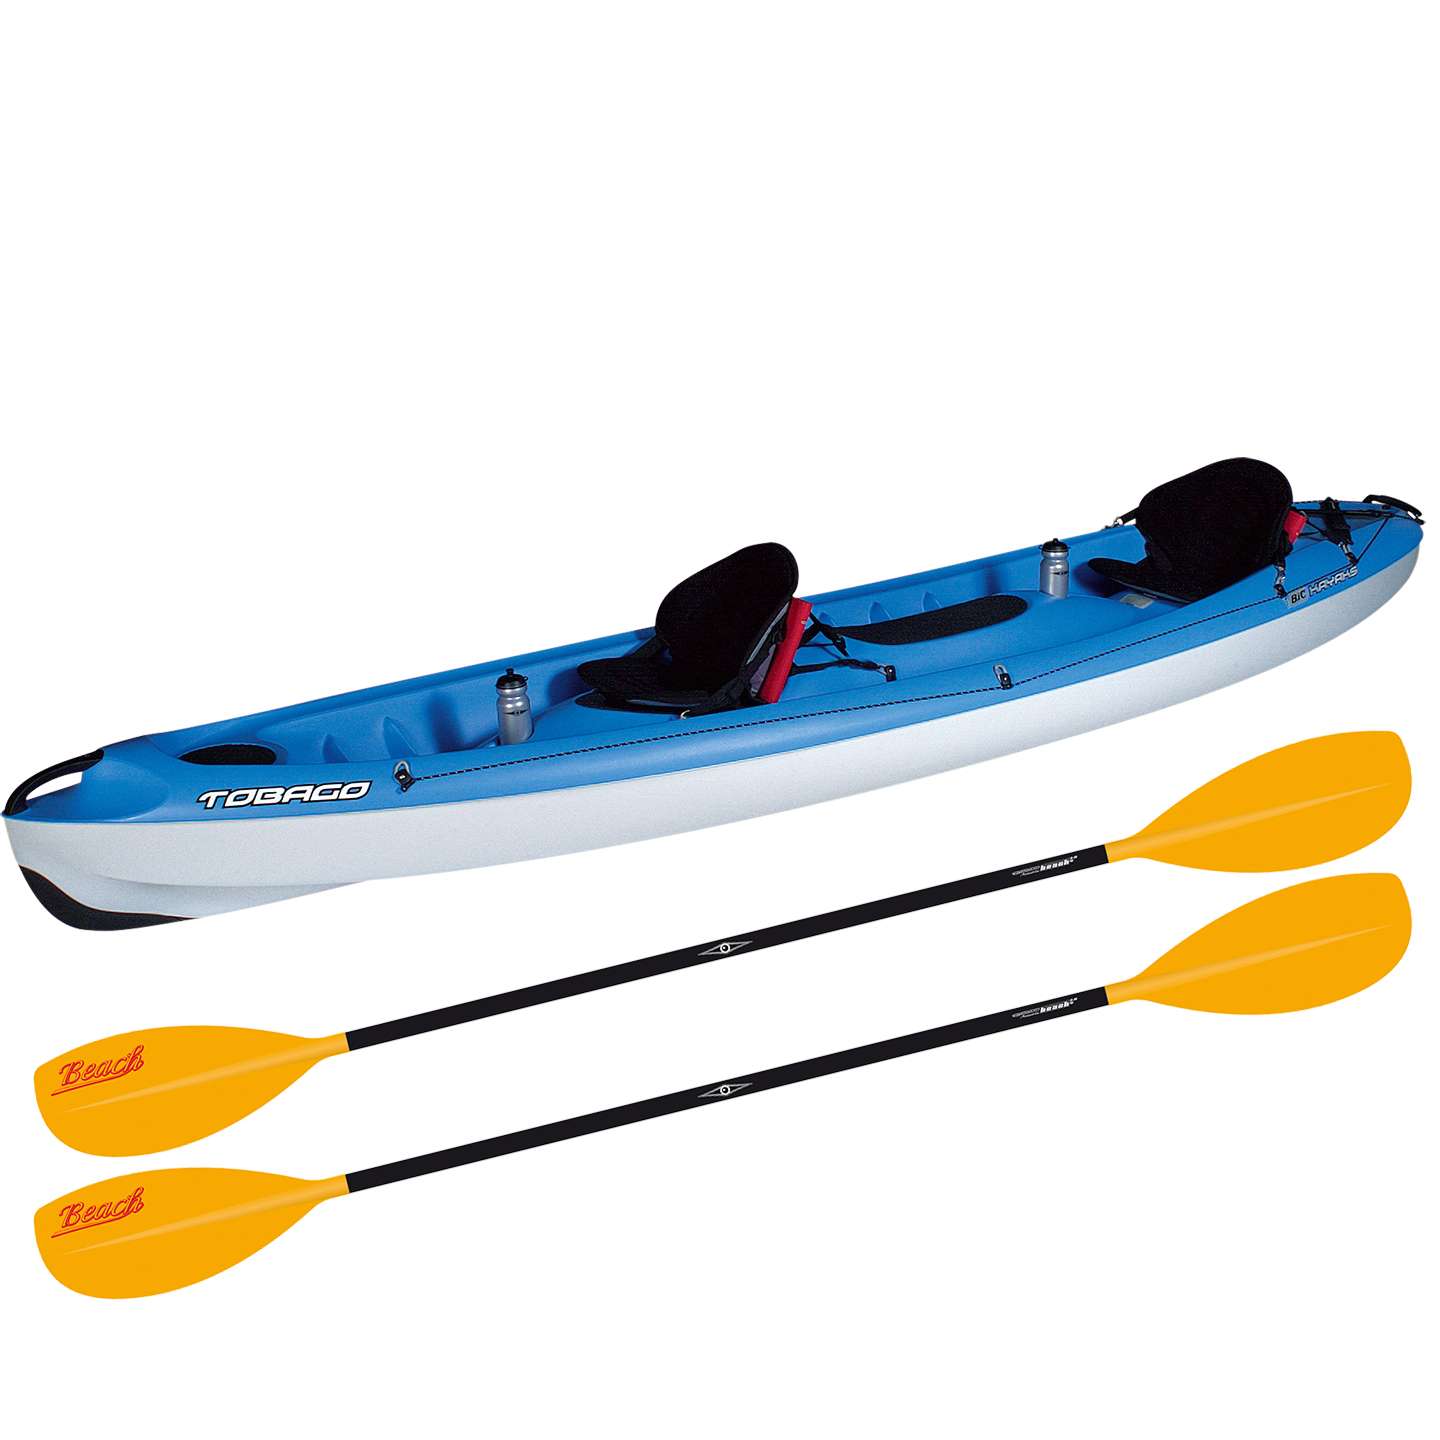 Les Pagaies : conseils et guides d'achat - kayak - pagaie - équipement